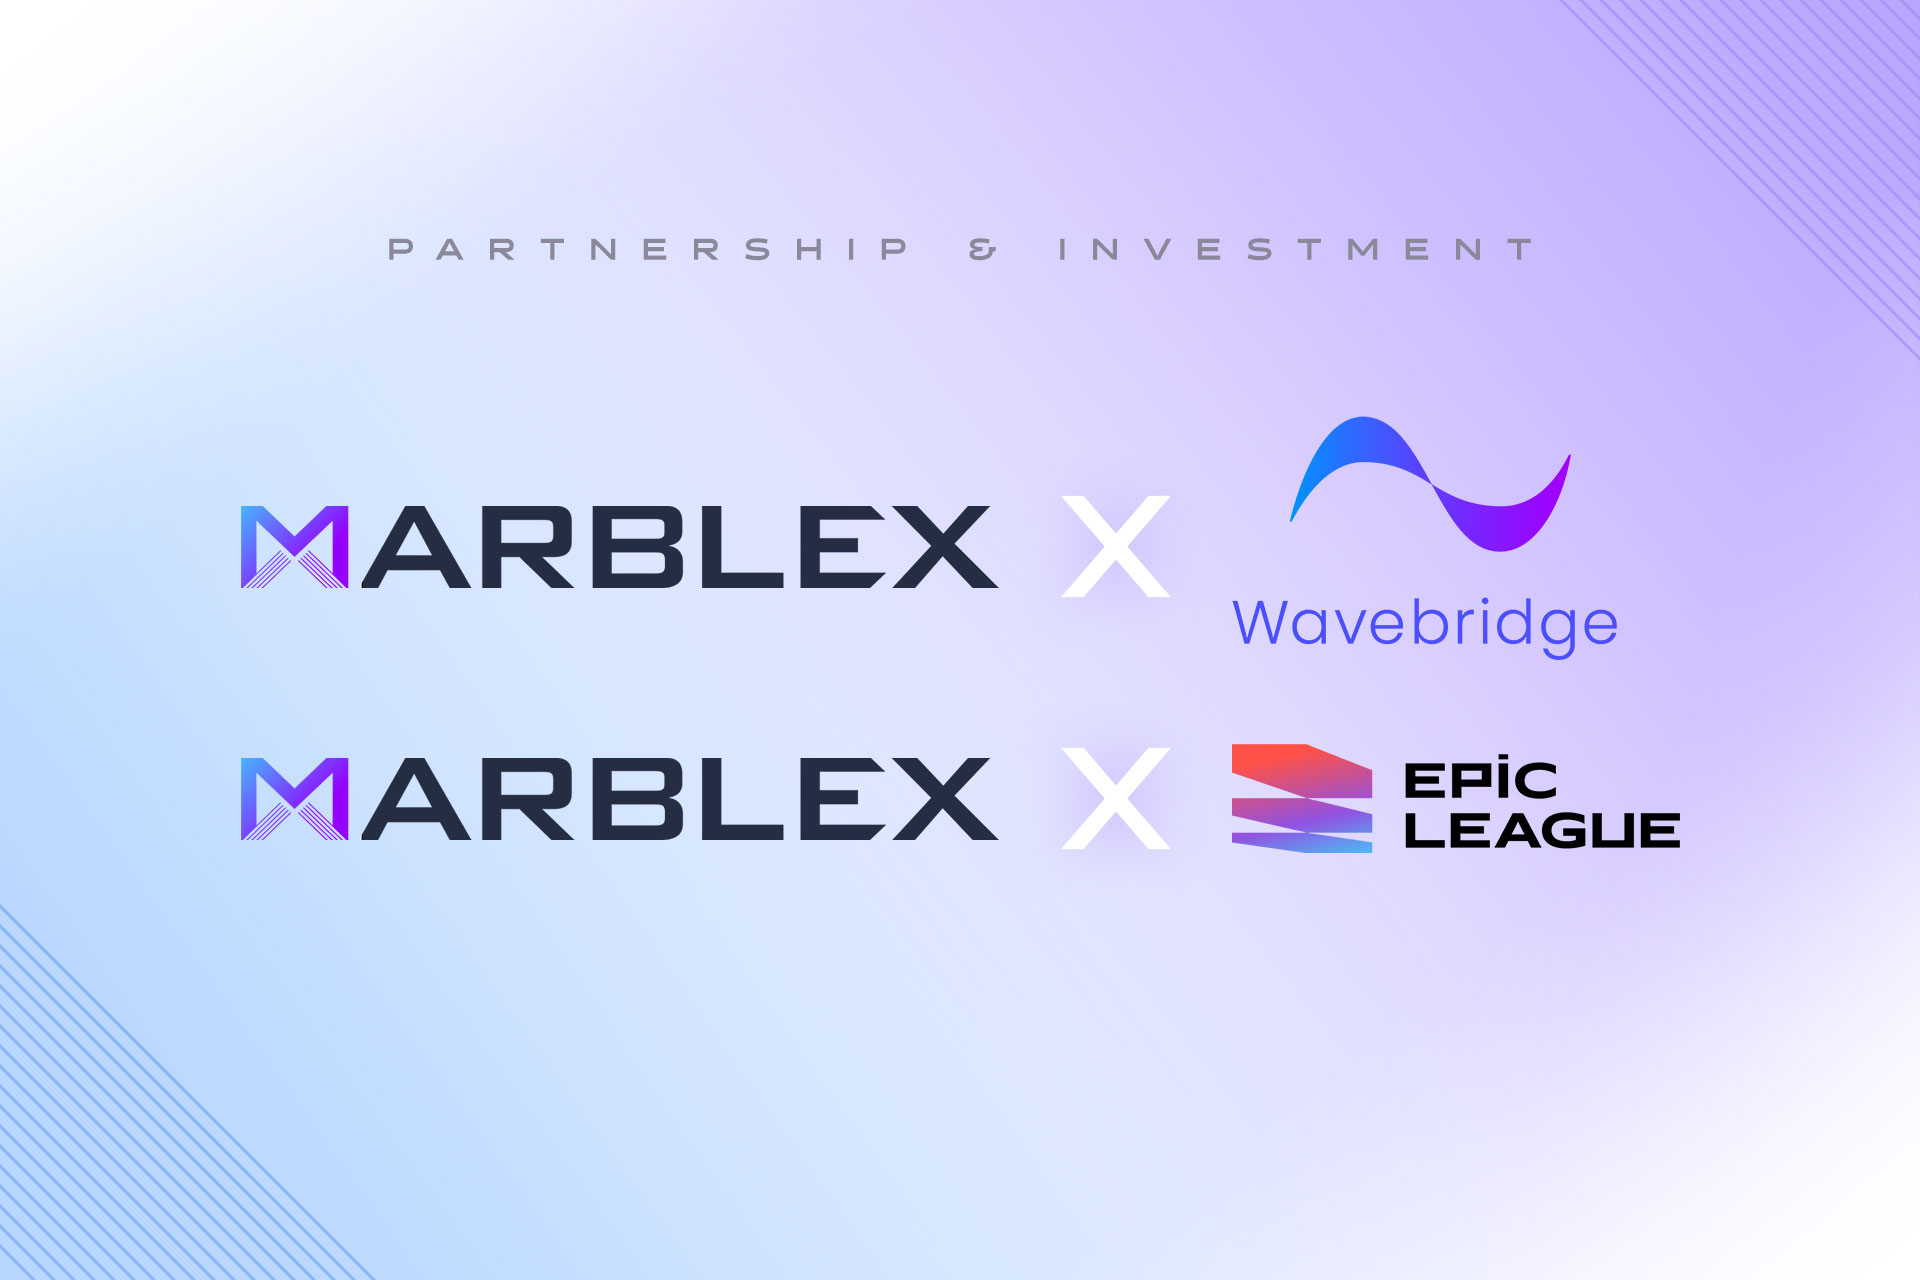 透過全新合作夥伴關係與投資 MARBLEX持續引領其區塊鏈生態系統MBX